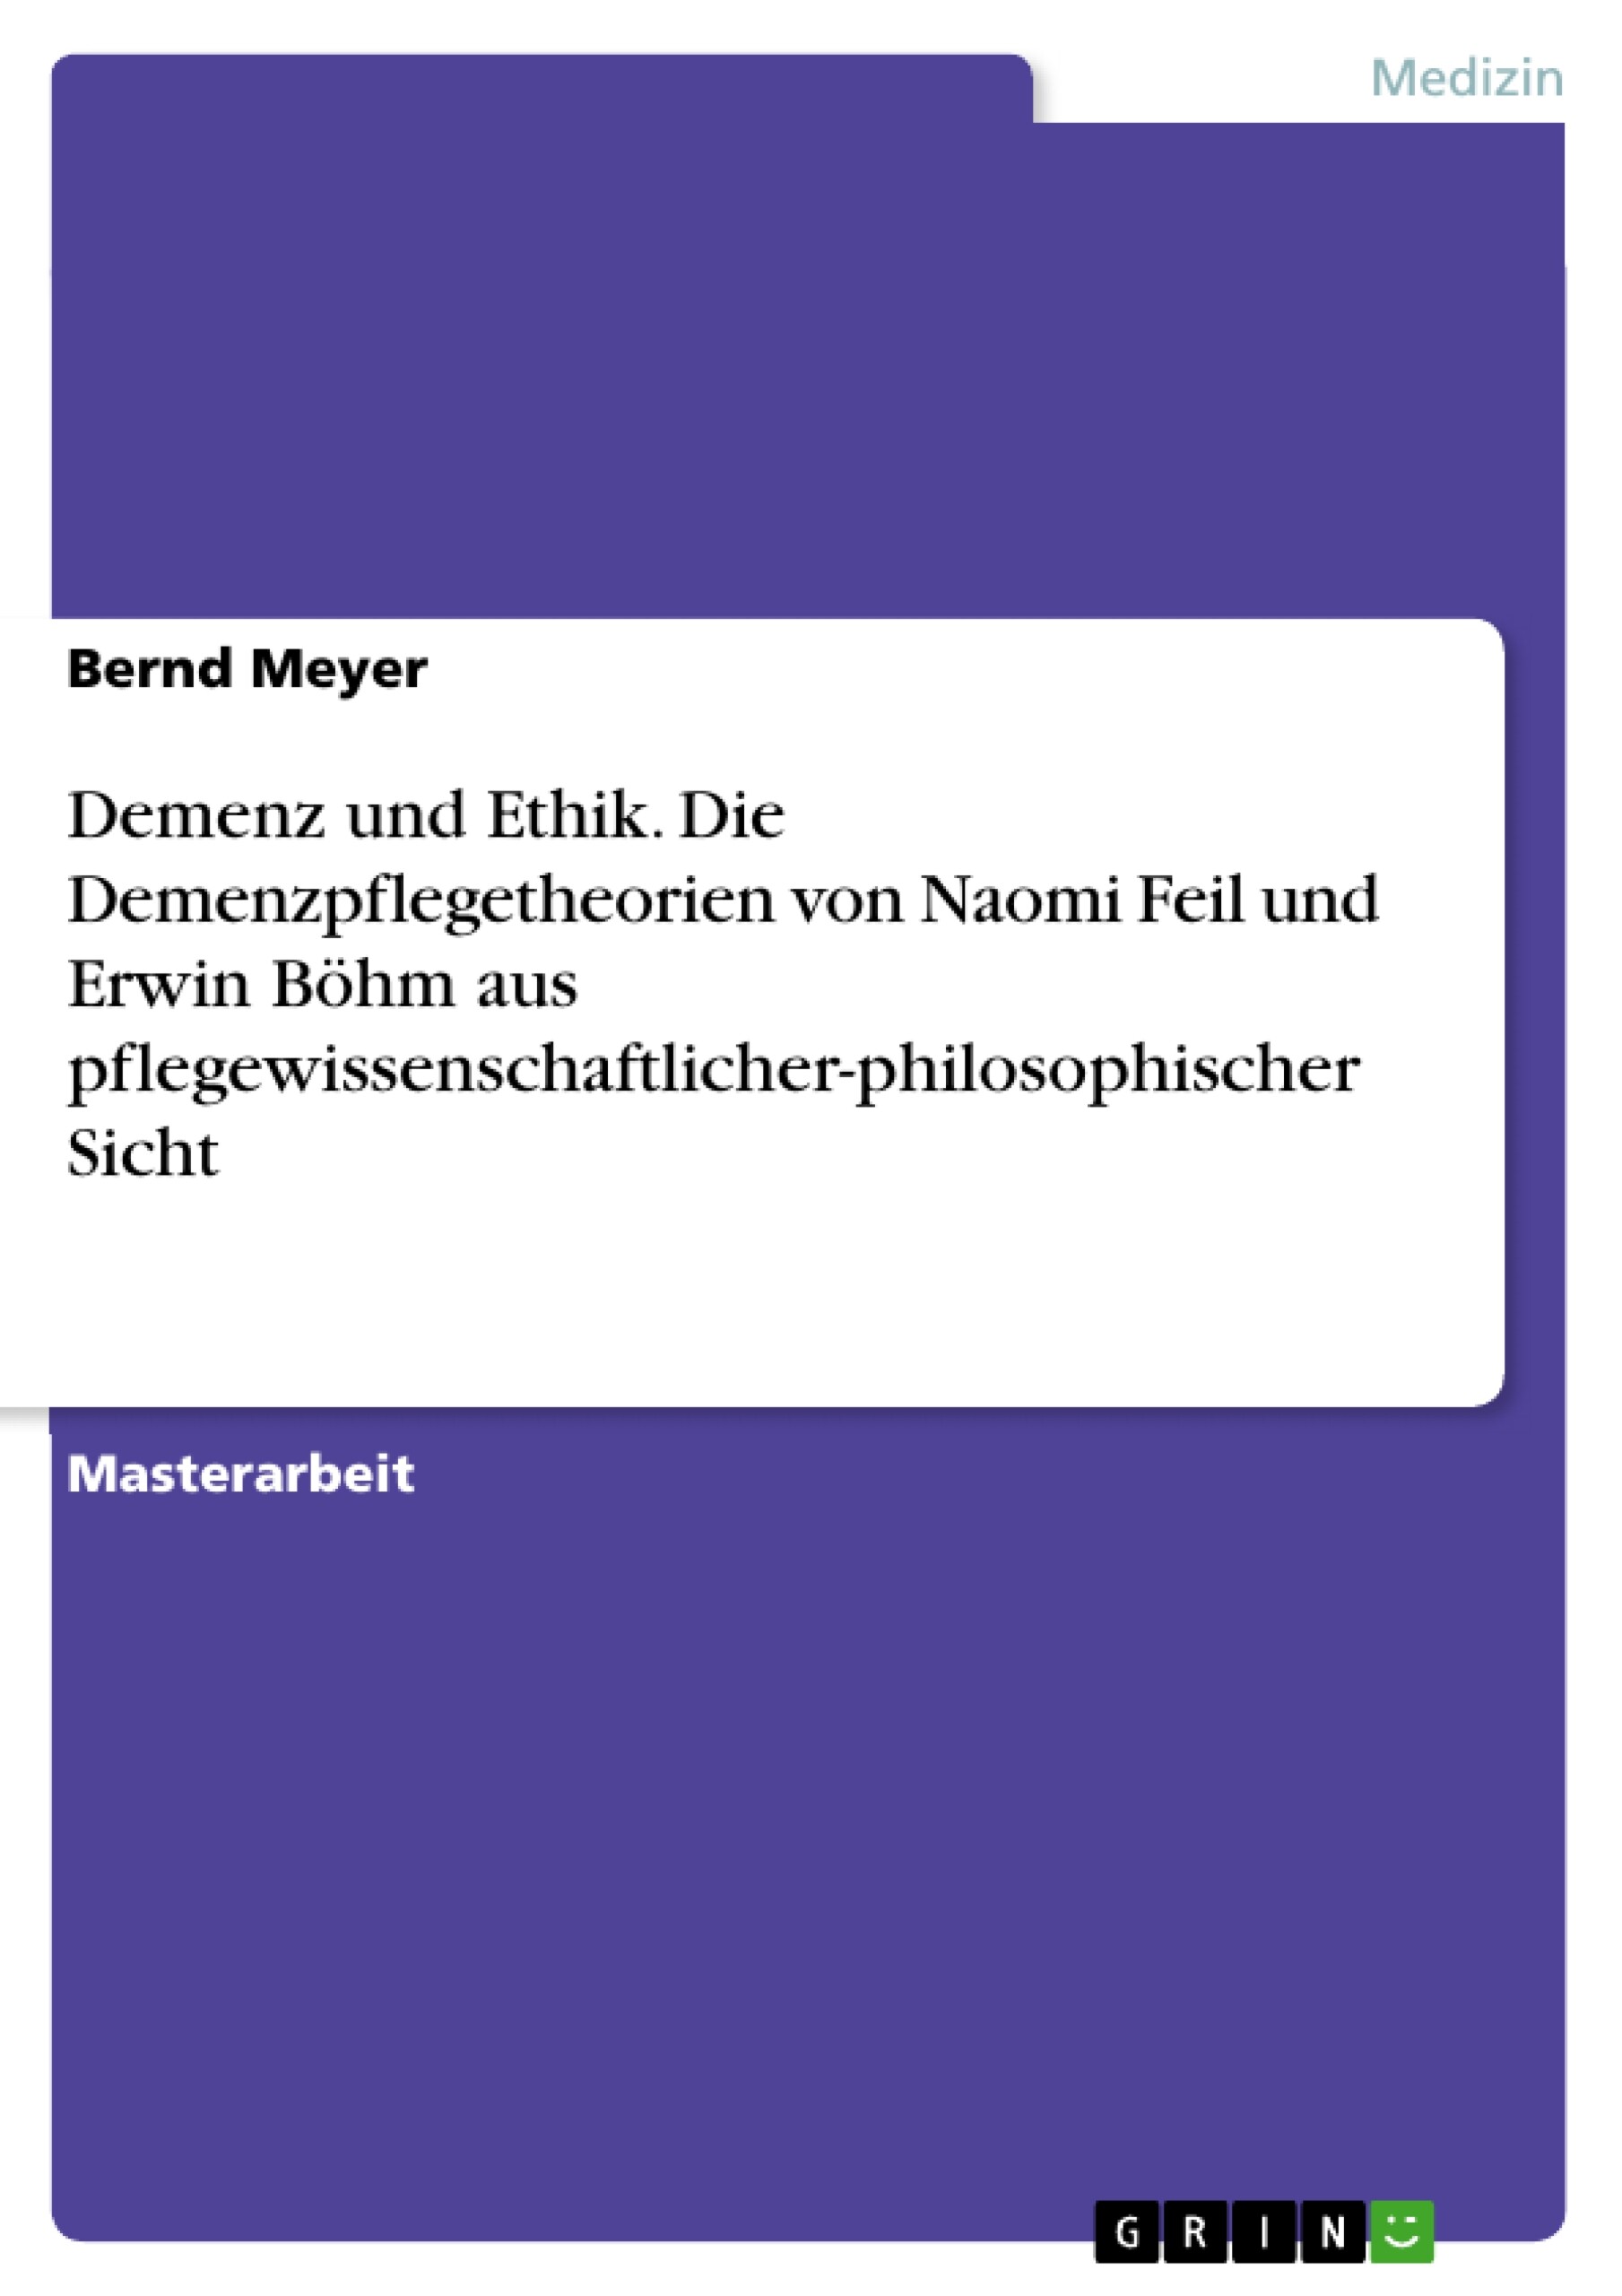 Demenz und Ethik. Die Demenzpflegetheorien von Naomi Feil und Erwin Böhm aus pflegewissenschaftlicher-philosophischer Sicht